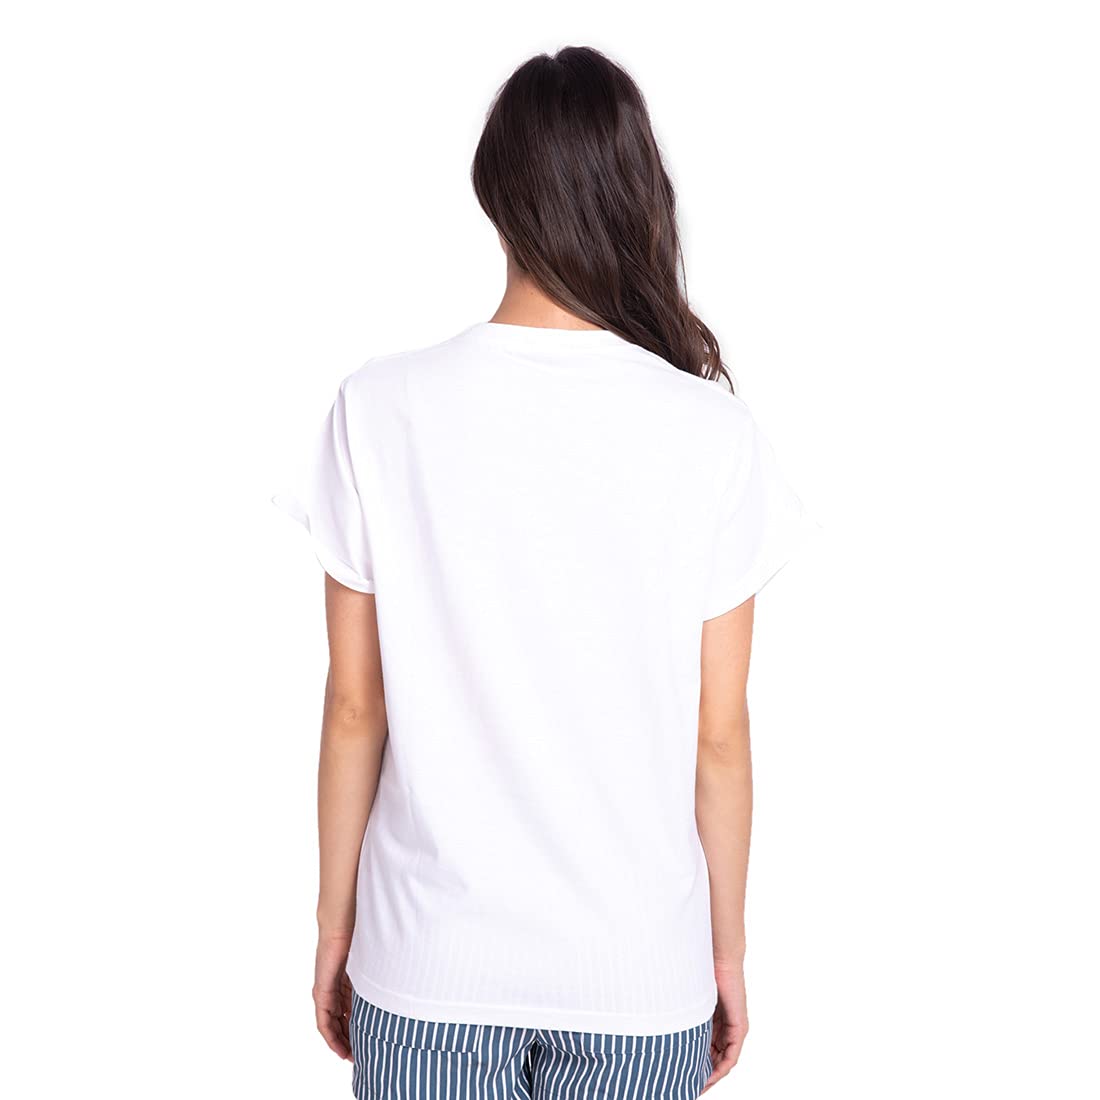 Bewakoof Women's Cotton Solid Boyfriend Half Sleeve | Round Neck | Regular Fit T-Shirt/Tee